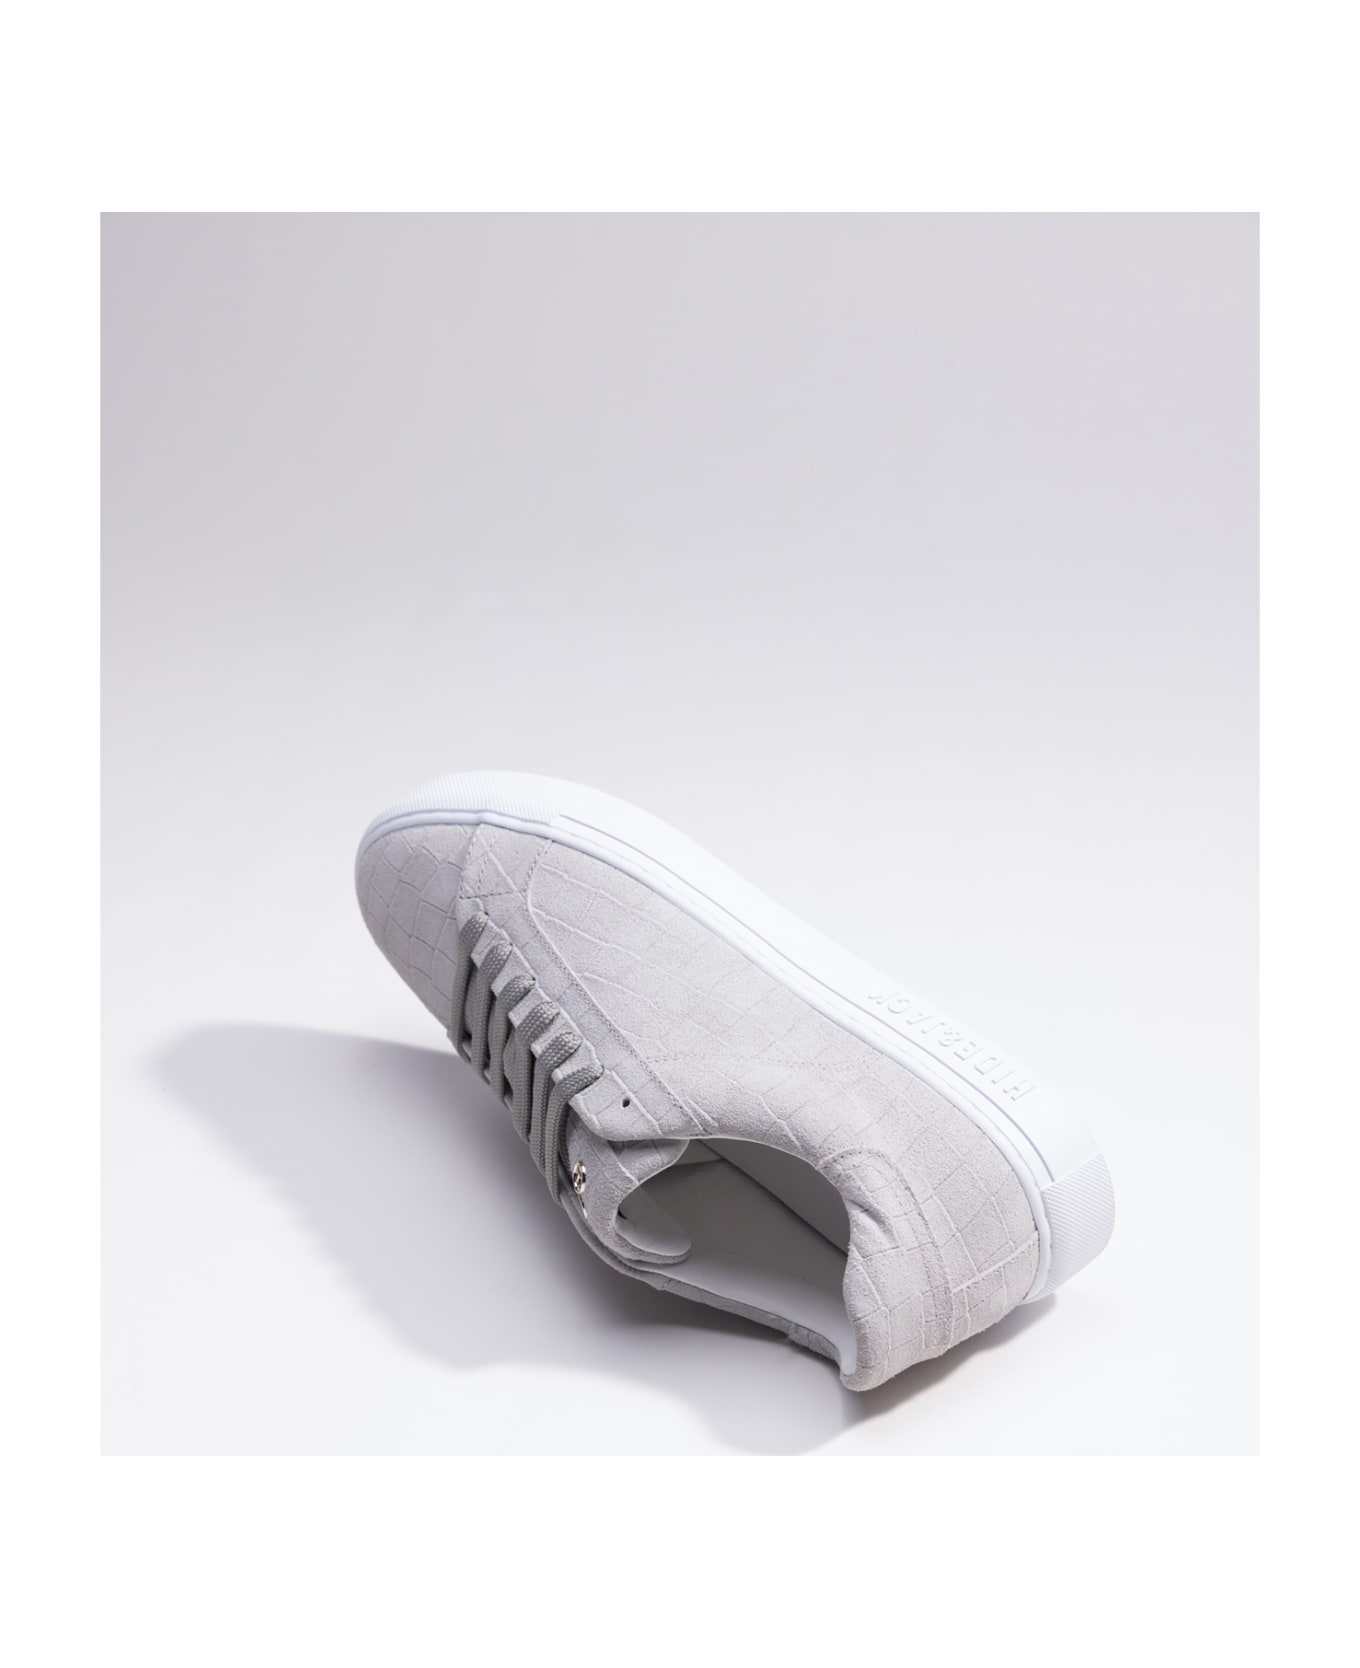 Hide&Jack Low Top Sneaker - Essence Suede Grey スニーカー